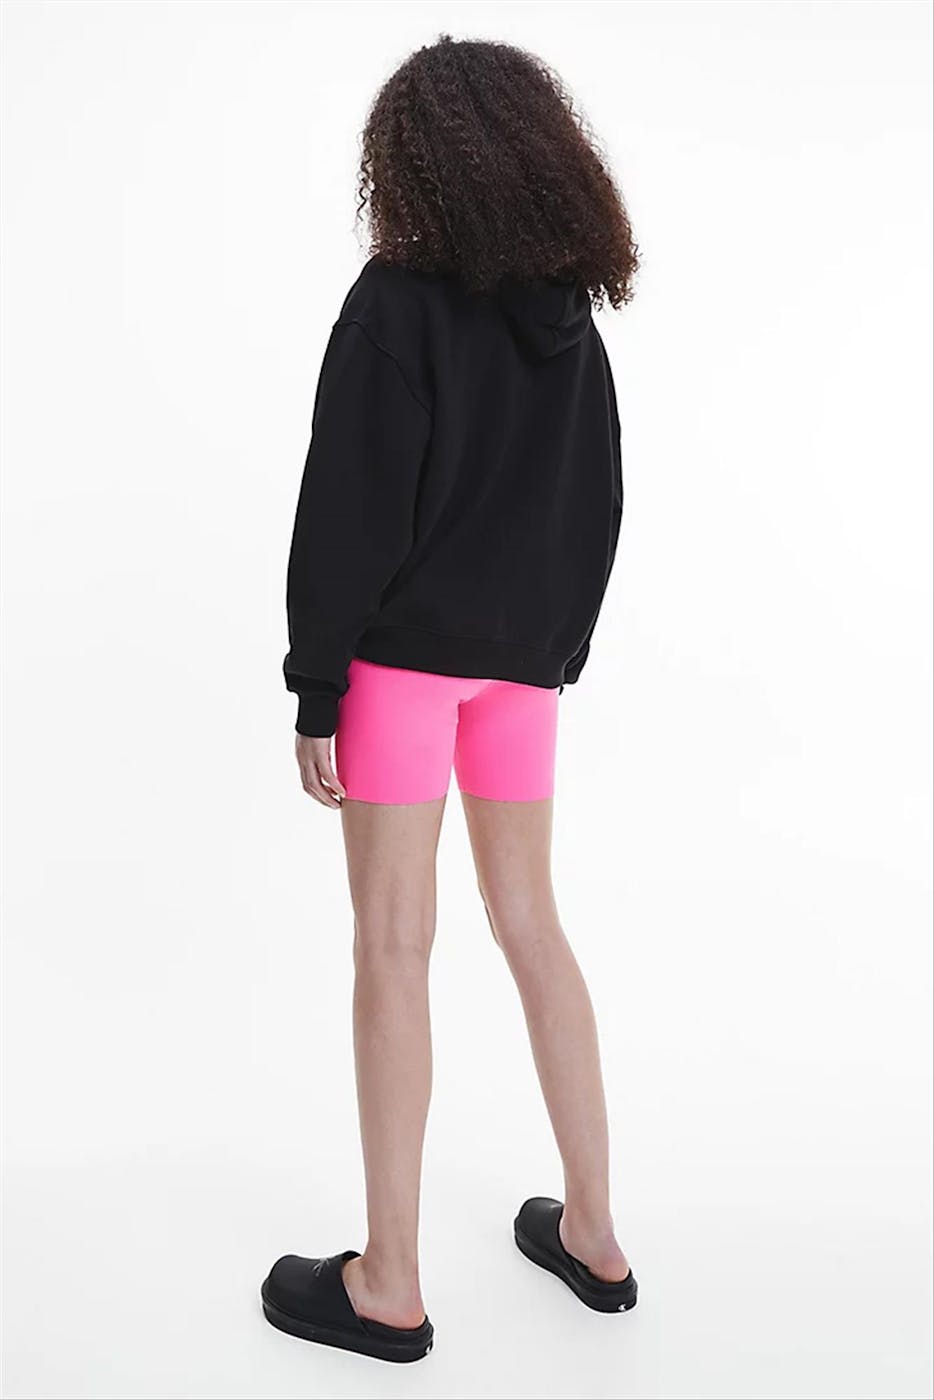 Calvin Klein Jeans - Zwarte Neon Logo hoodie